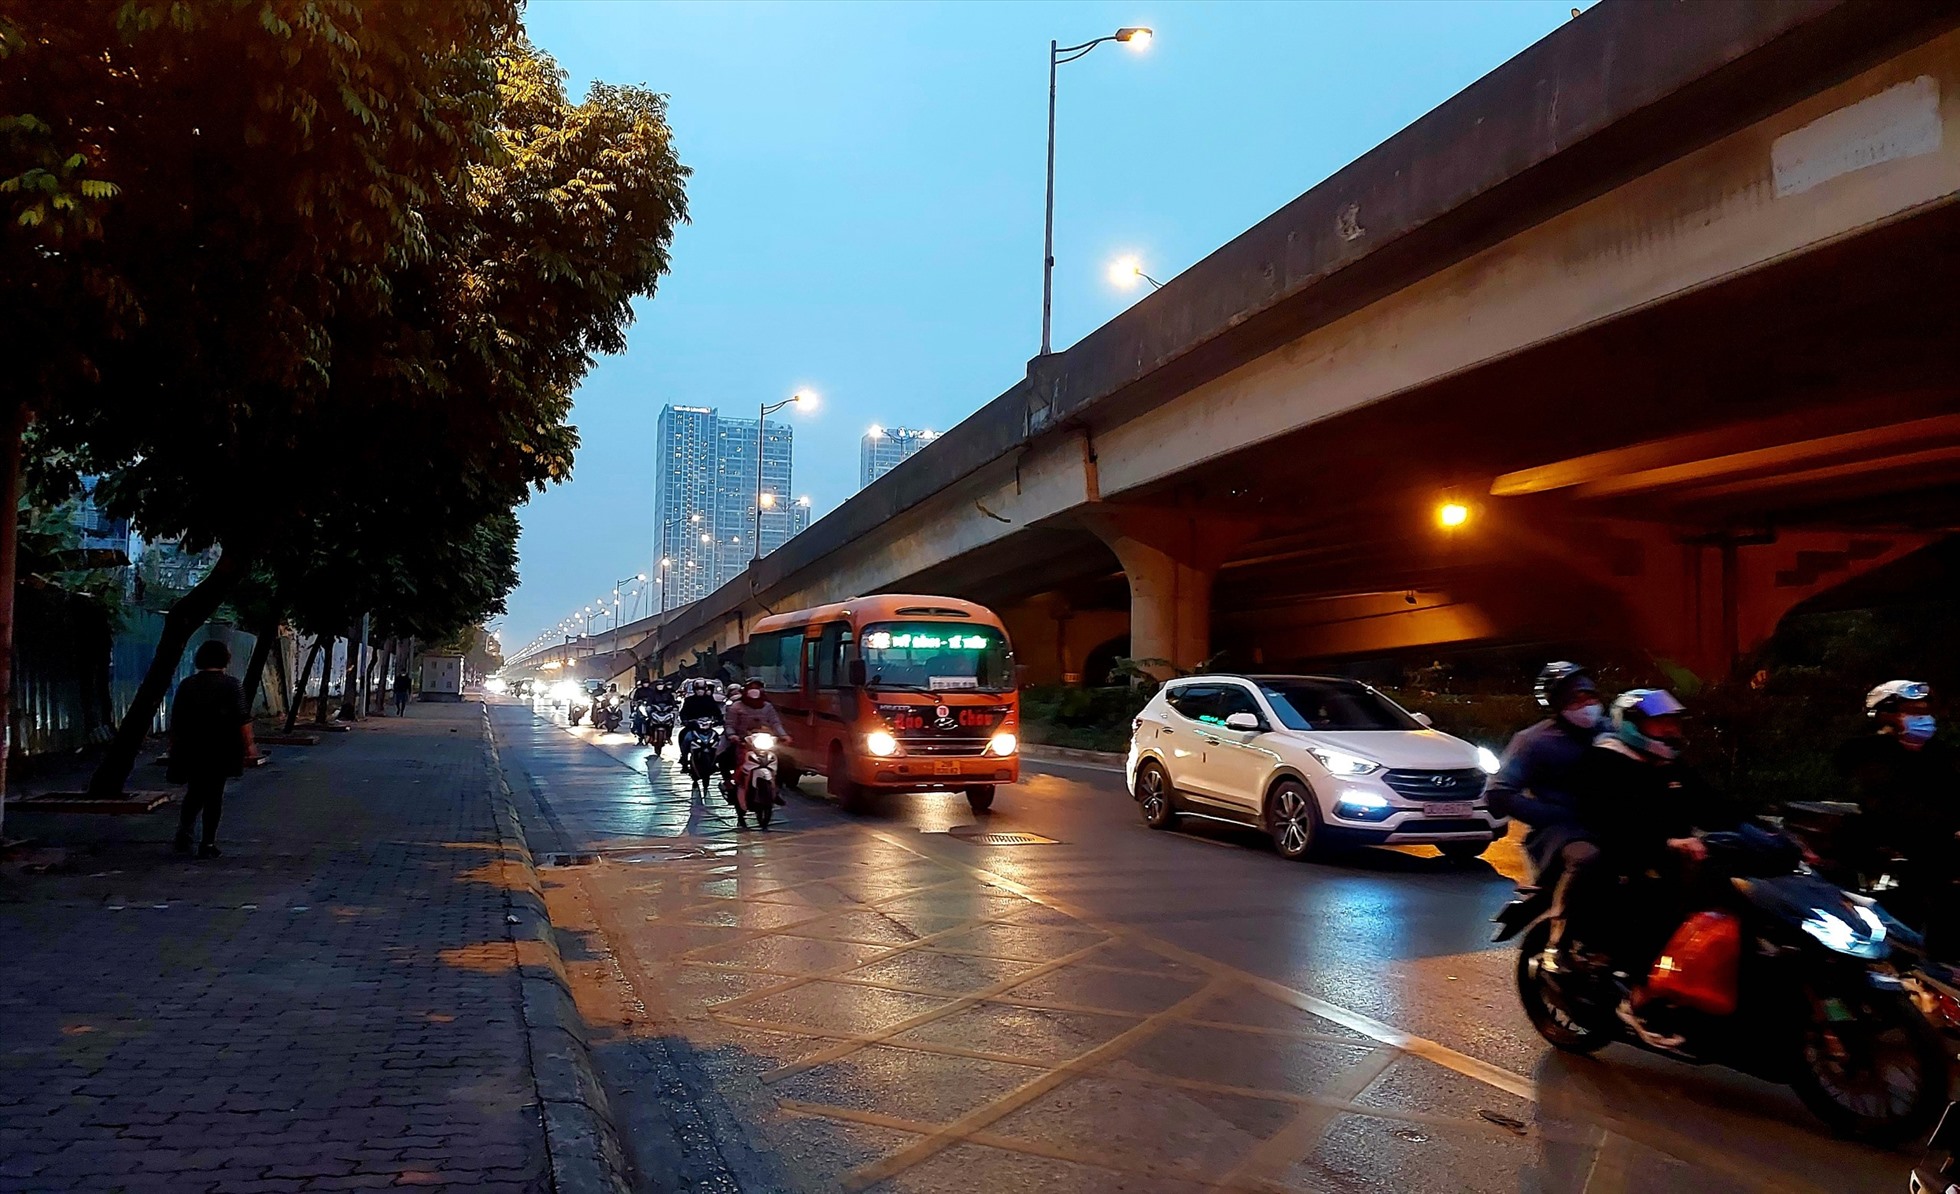 17h45: Áp lực giao thông giảm. Tại đường Phạm Hùng, đường thông thoáng, người dân di chuyển thuận tiện.